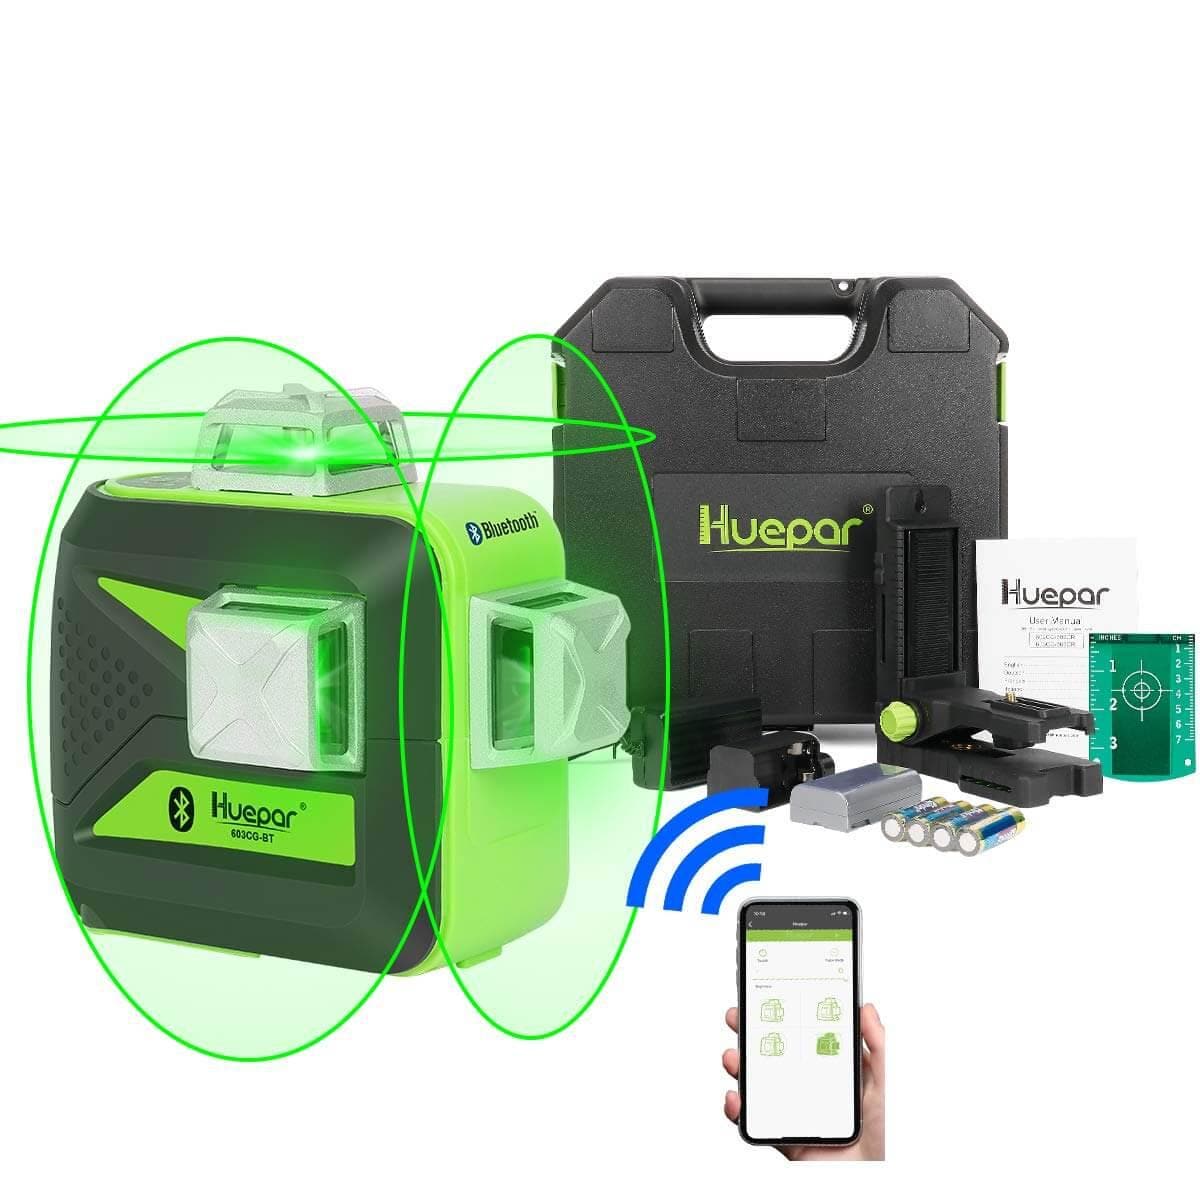 Huepar 603BT-H - 3D Green Beam Self-Leveling 3 X 360° Laser Level with Hardcase - HUEPAR US